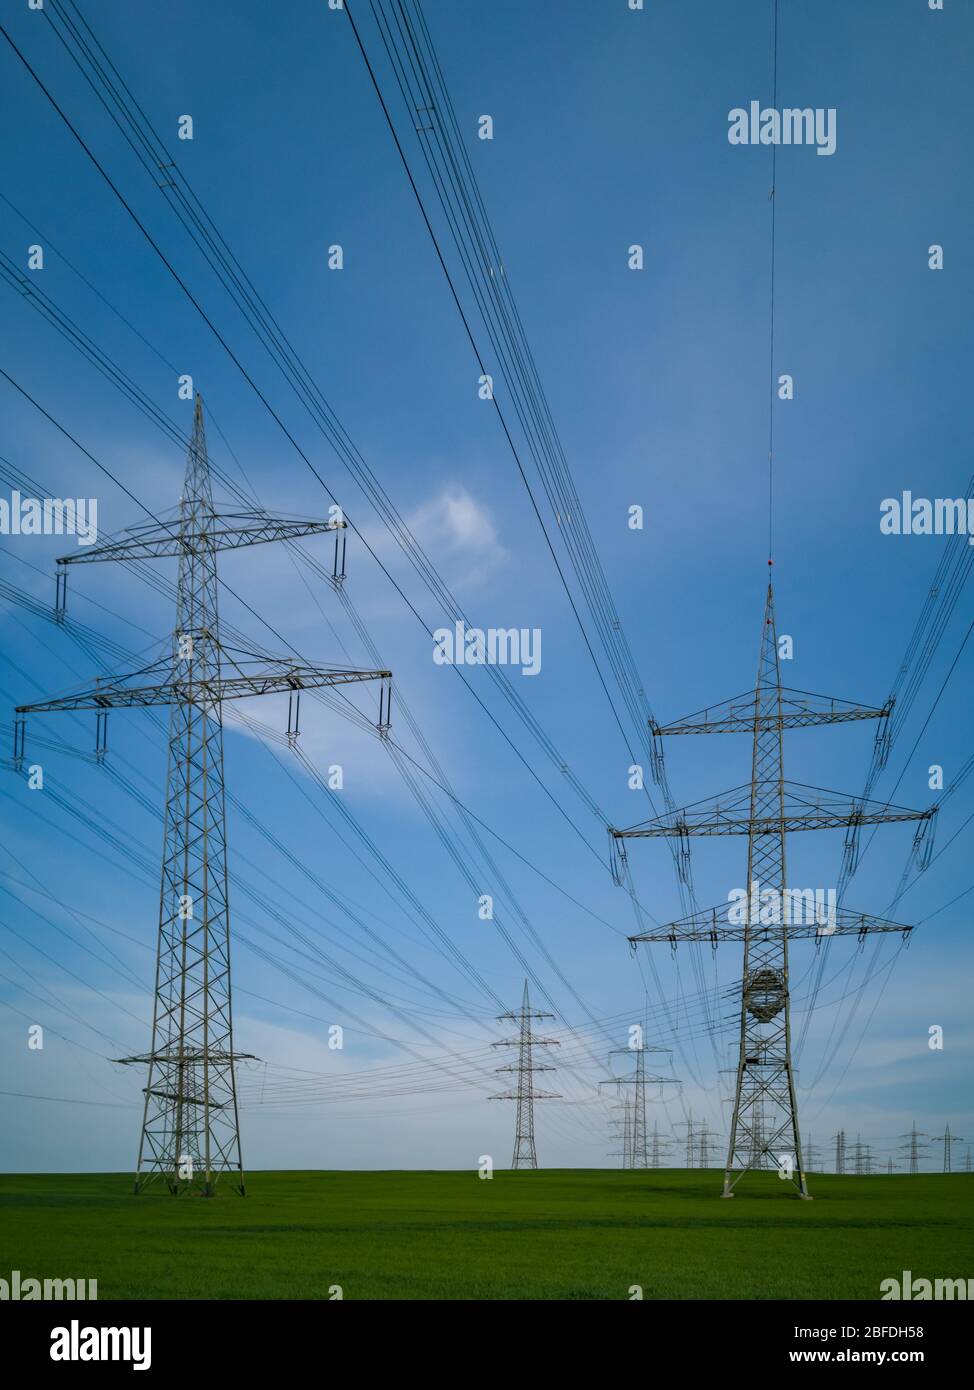 Pylone von Hochspannungsleitungen vor einem blauen Himmel mit Wolken auf einem grünen Feld, Elektroindustrie. Stockfoto